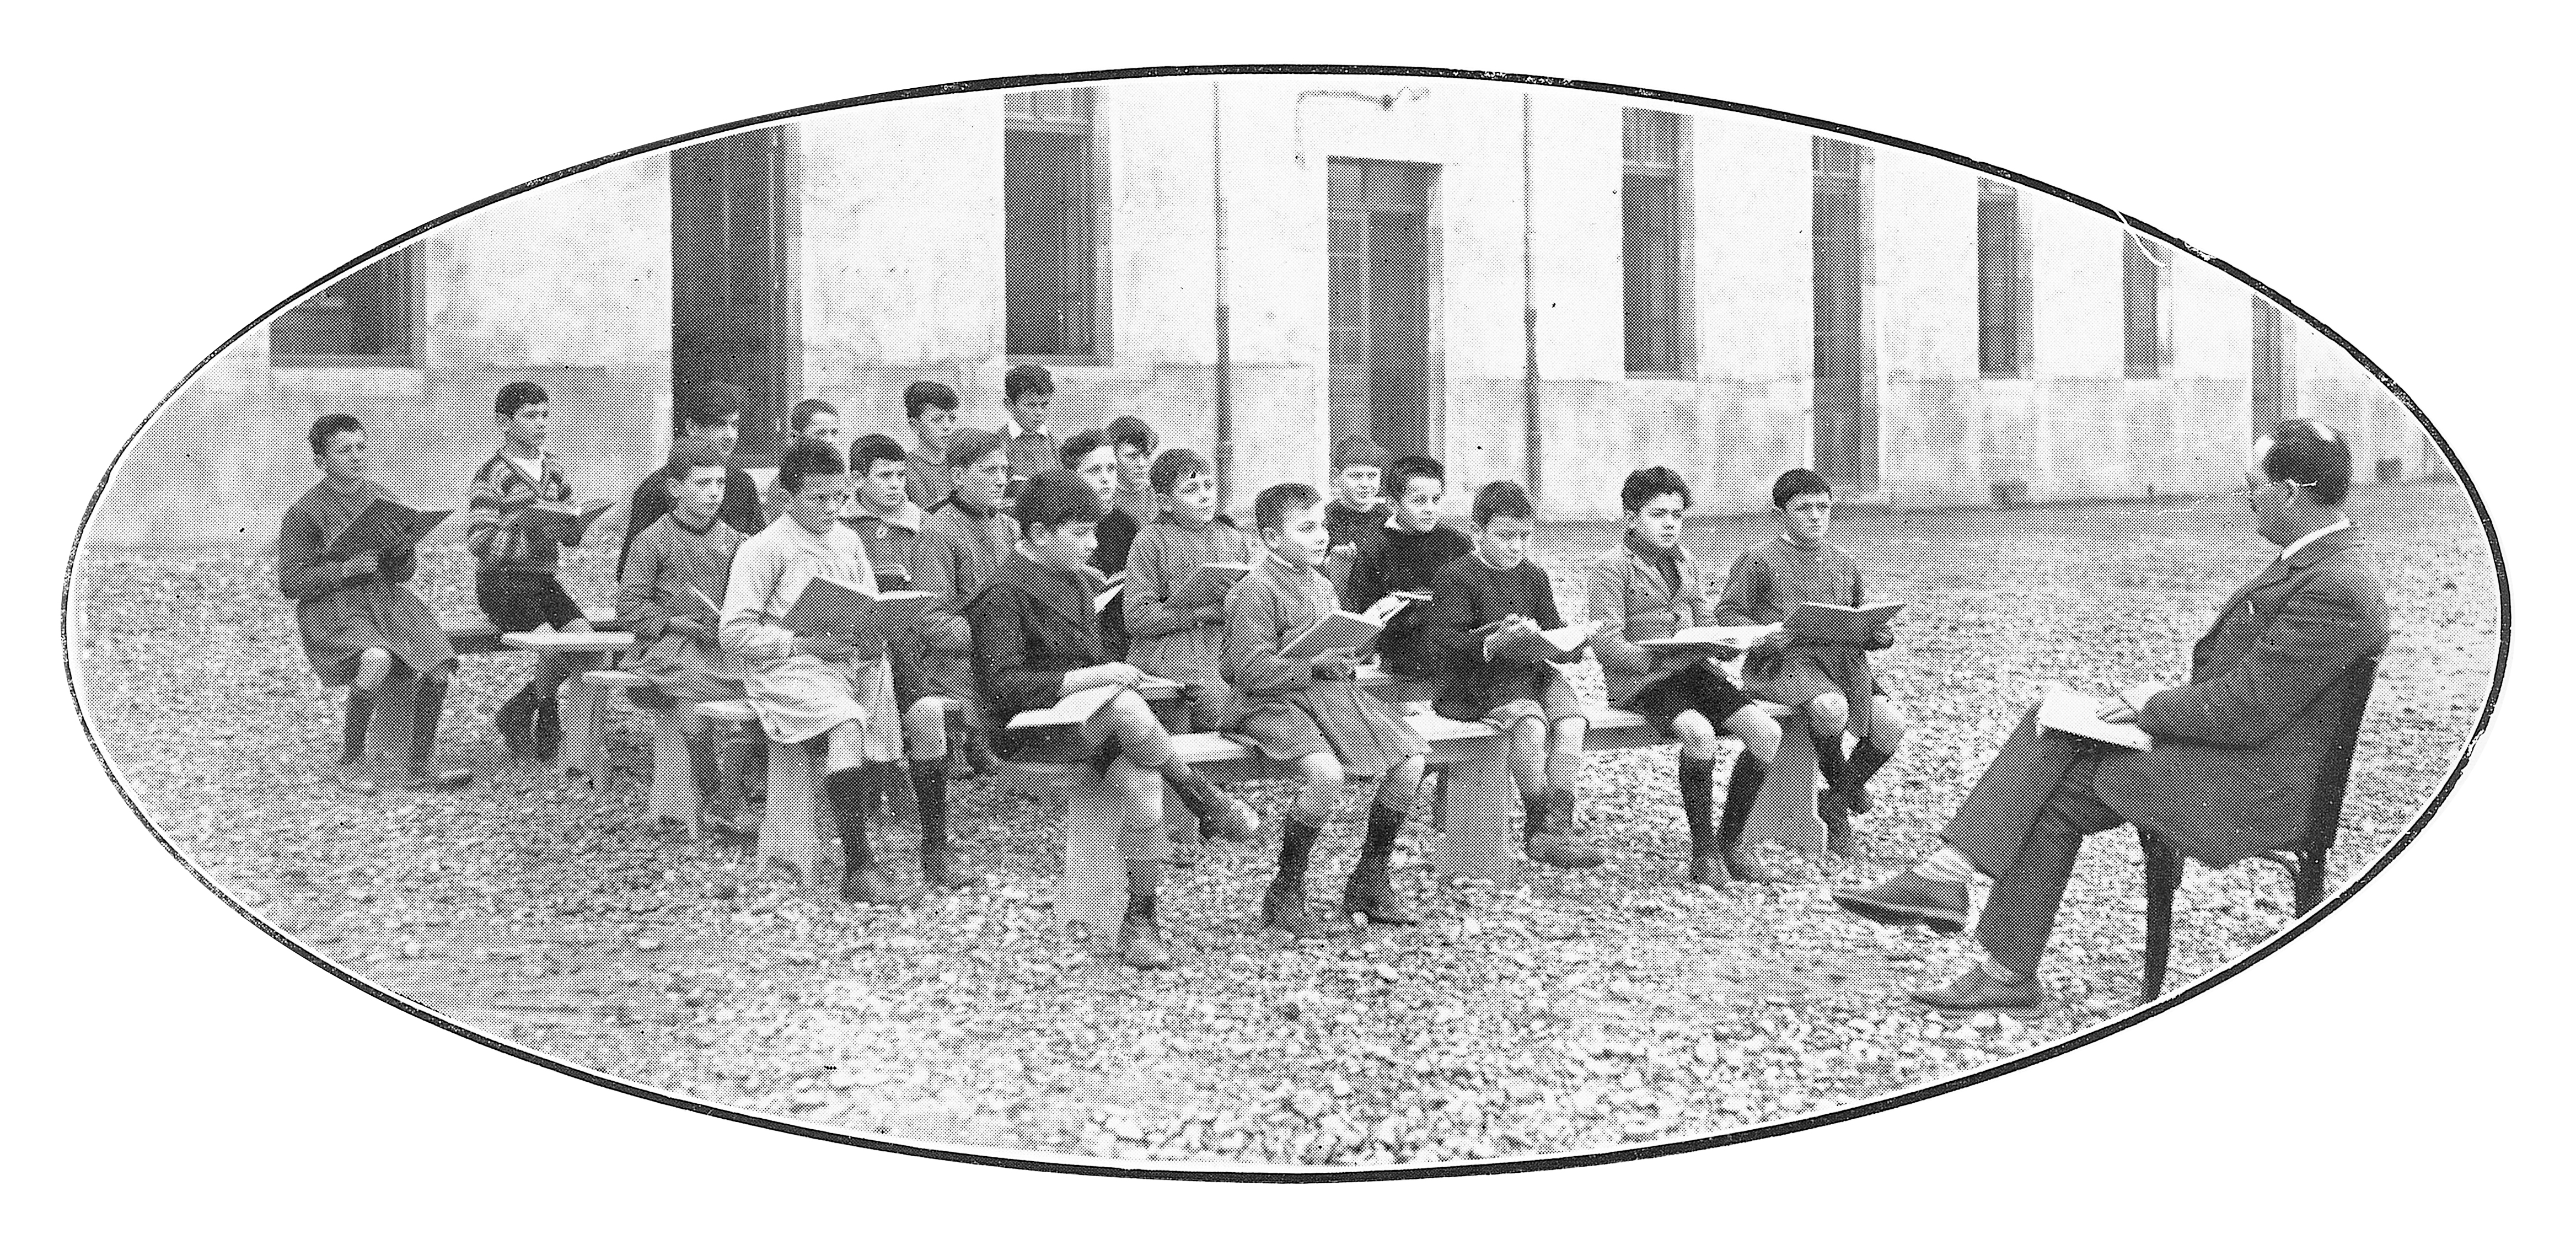 La classe de plein air, image extraite de : Villeurbanne 1924-1934, ou dix ans d'administration, Archives municipales de Villeurbanne / Le Rize, 2 C 18